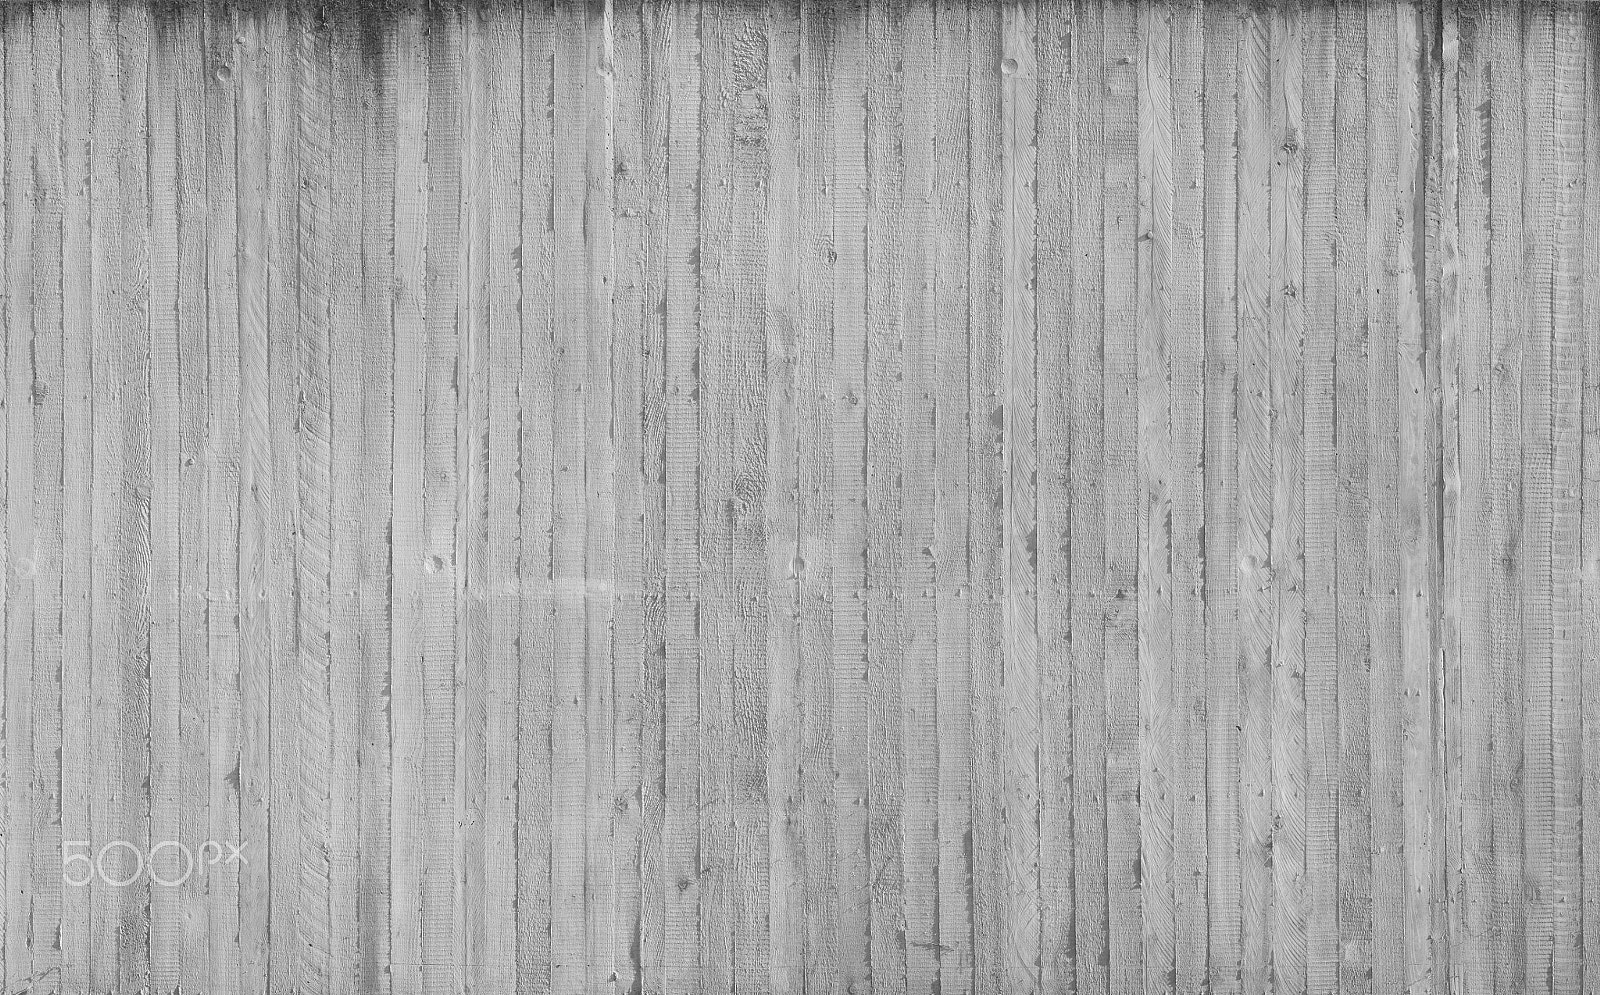 Canon EOS 50D sample photo. Concrete wall photography